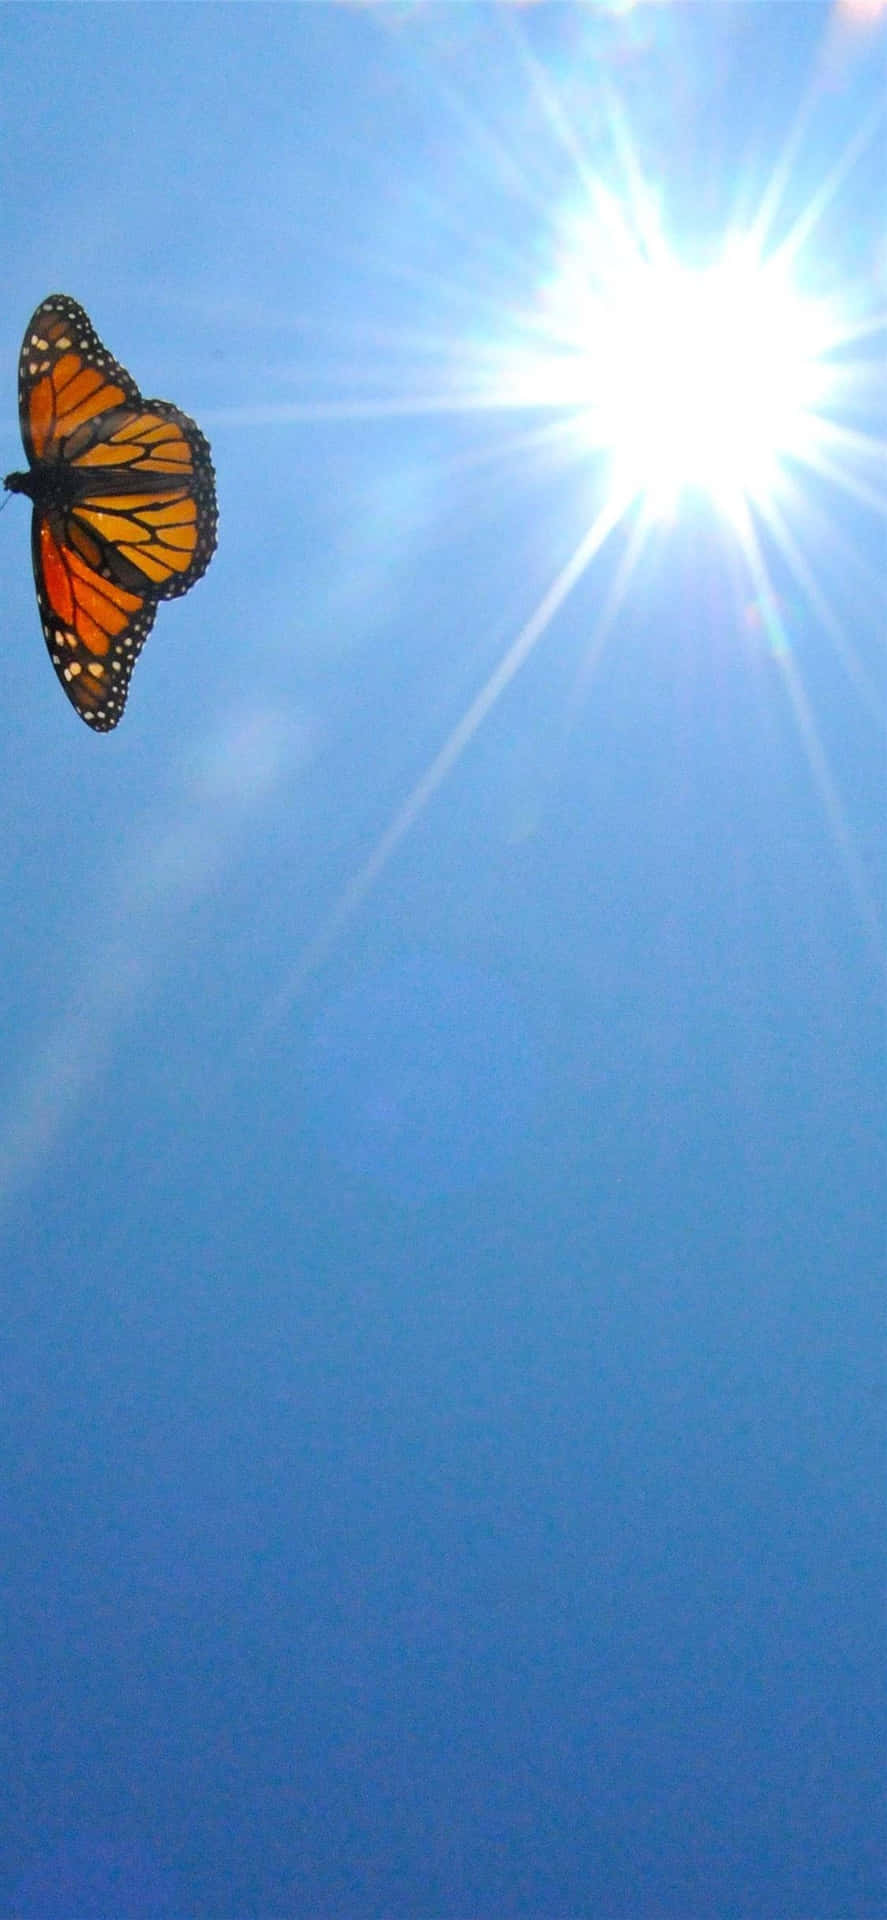 Majestic Monarch Butterfly Soaring in the Clear Blue Sky Wallpaper